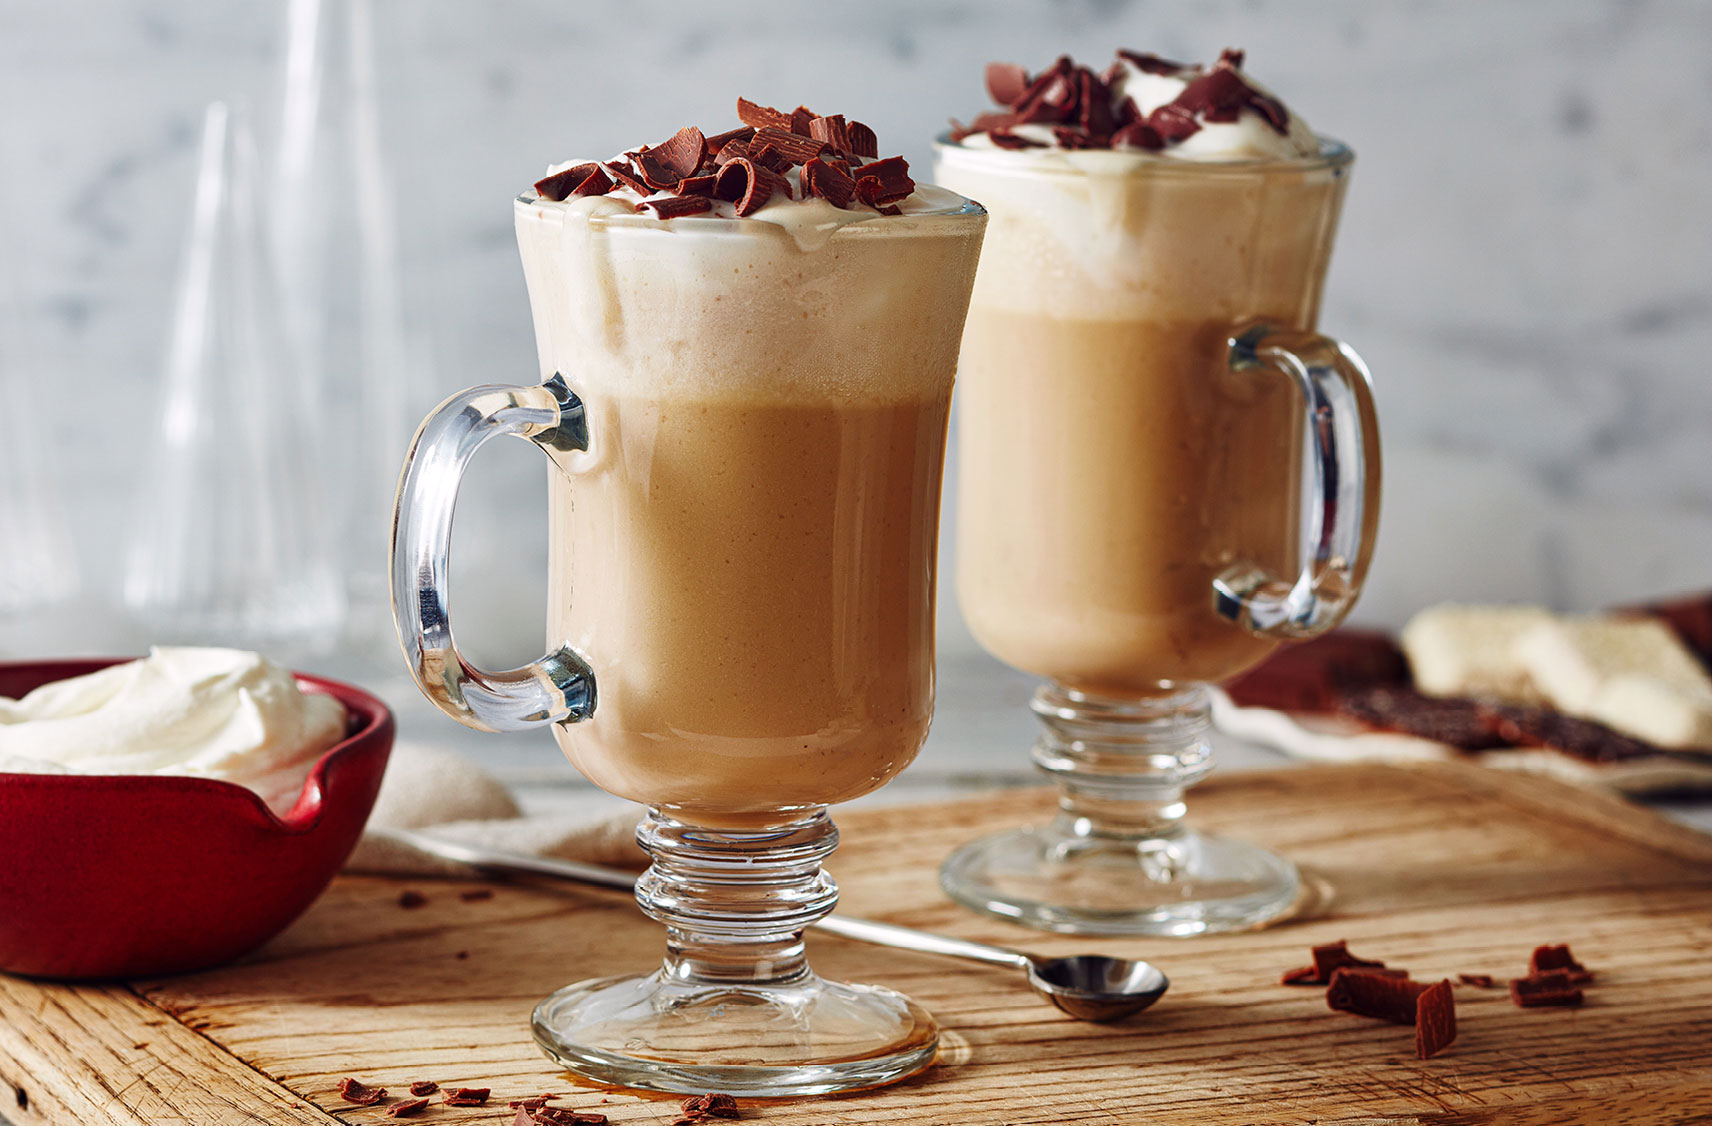 Deux lattés chauds garnis de crème fouettée et de copeaux de chocolat dans des tasses en verre.